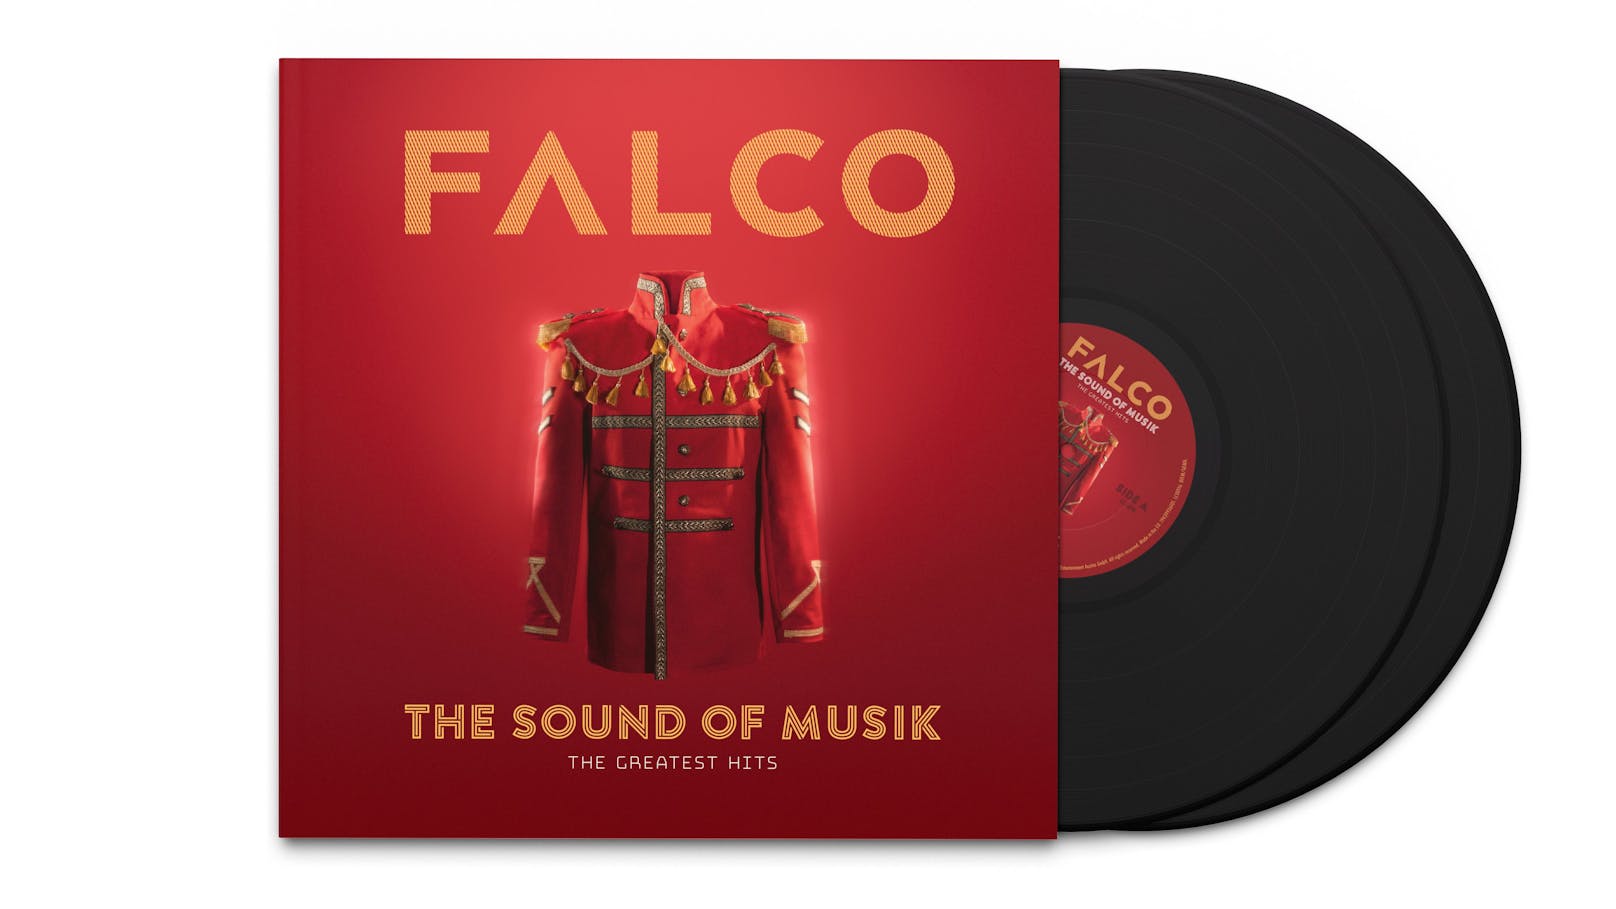 Mit der Compilation "The Sound of Musik" können Fans Österreichs Weltstar Falco noch einmal neu entdecken.